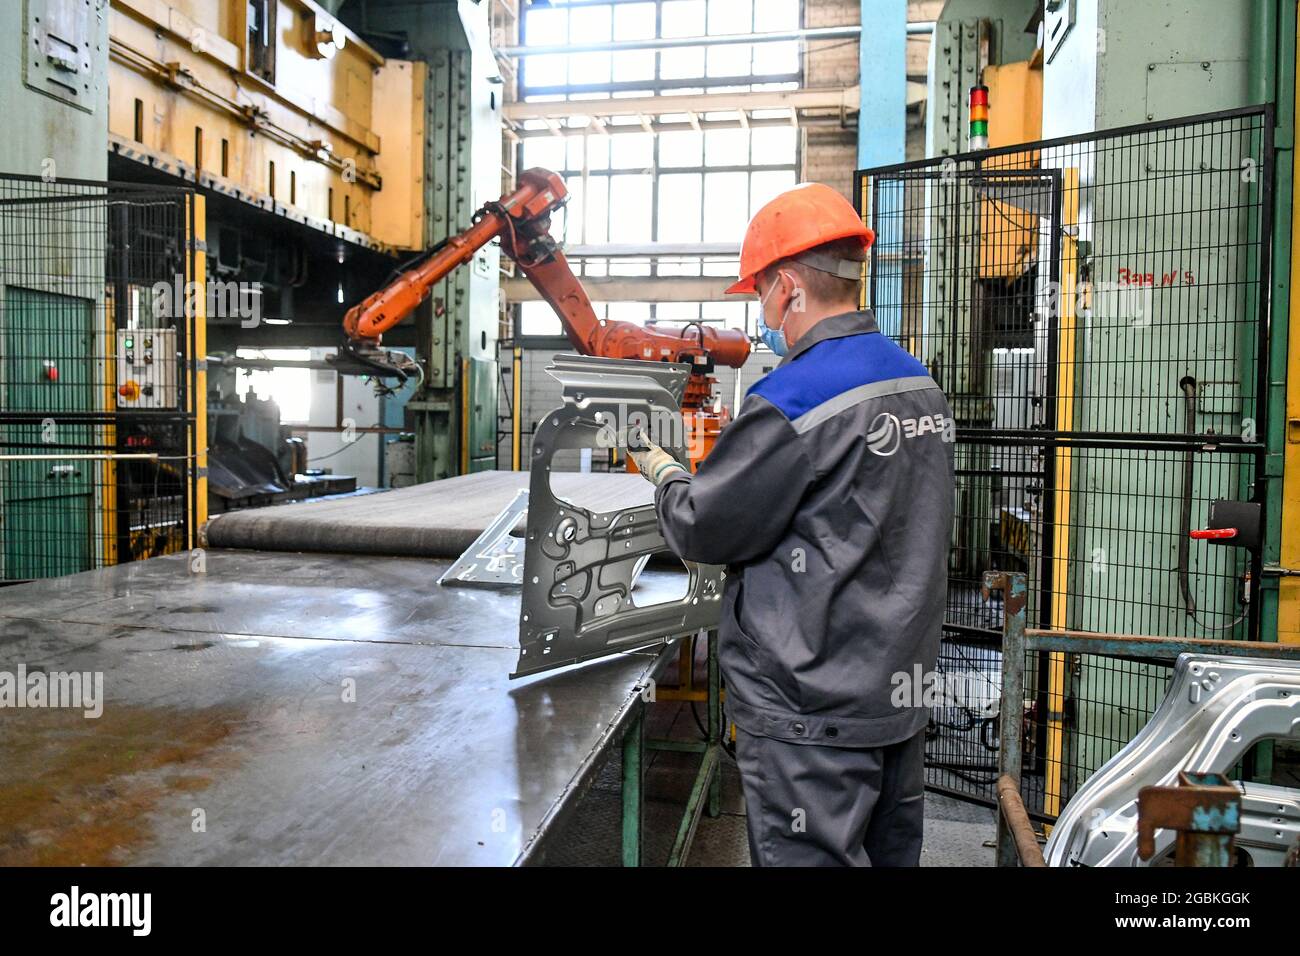 ZAPORIZHZHIA, UKRAINE - AUGUST 4, 2021 - A employee is seen at work at the Zaporizhzhia Automobile Building Plant, Zaporizhzhia, southeastern Ukraine. Stock Photo